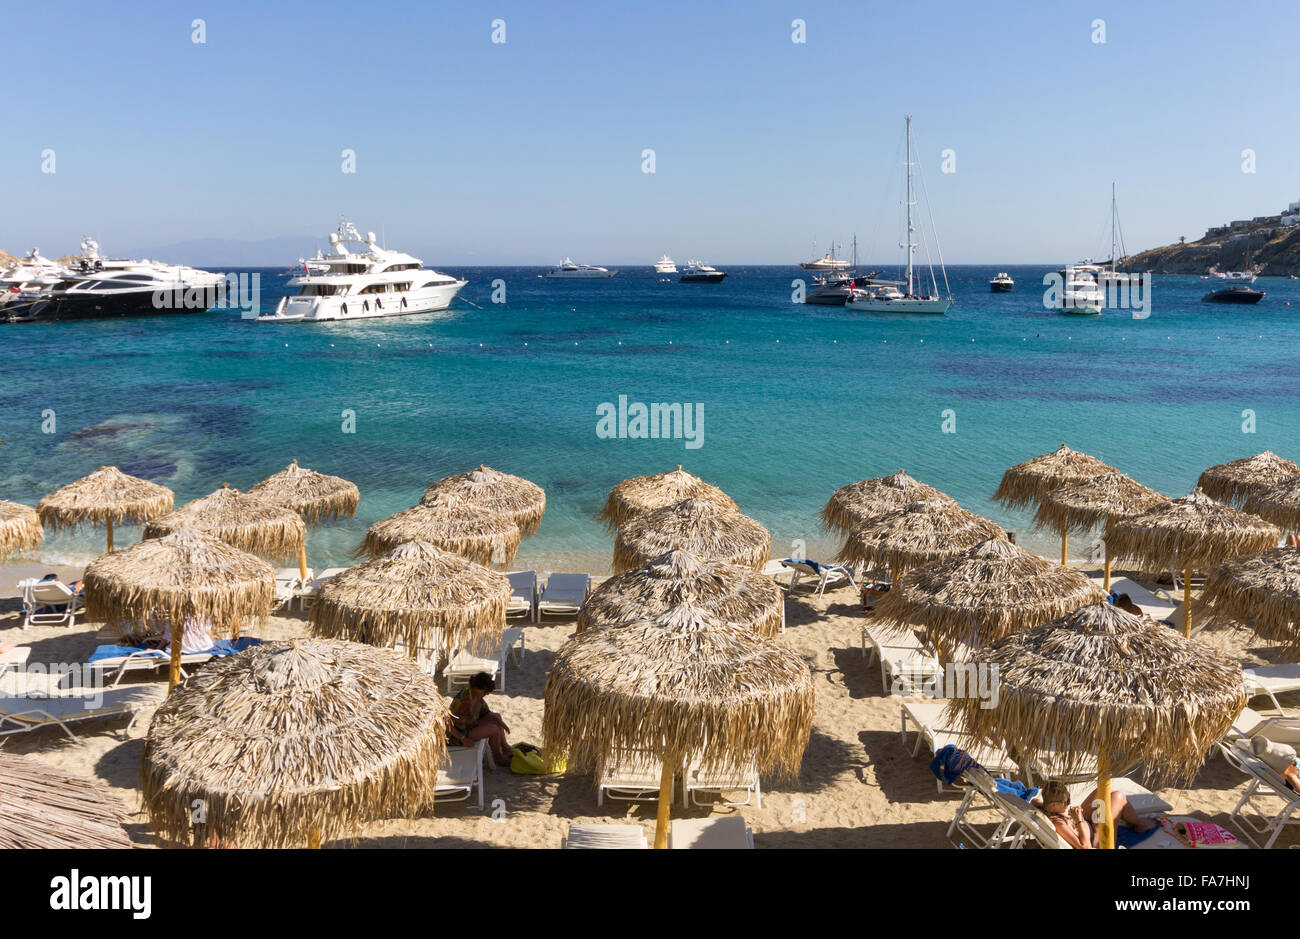 Greece, Cyclades Islands, Mykonos Island, Psarou beach Stock Photo